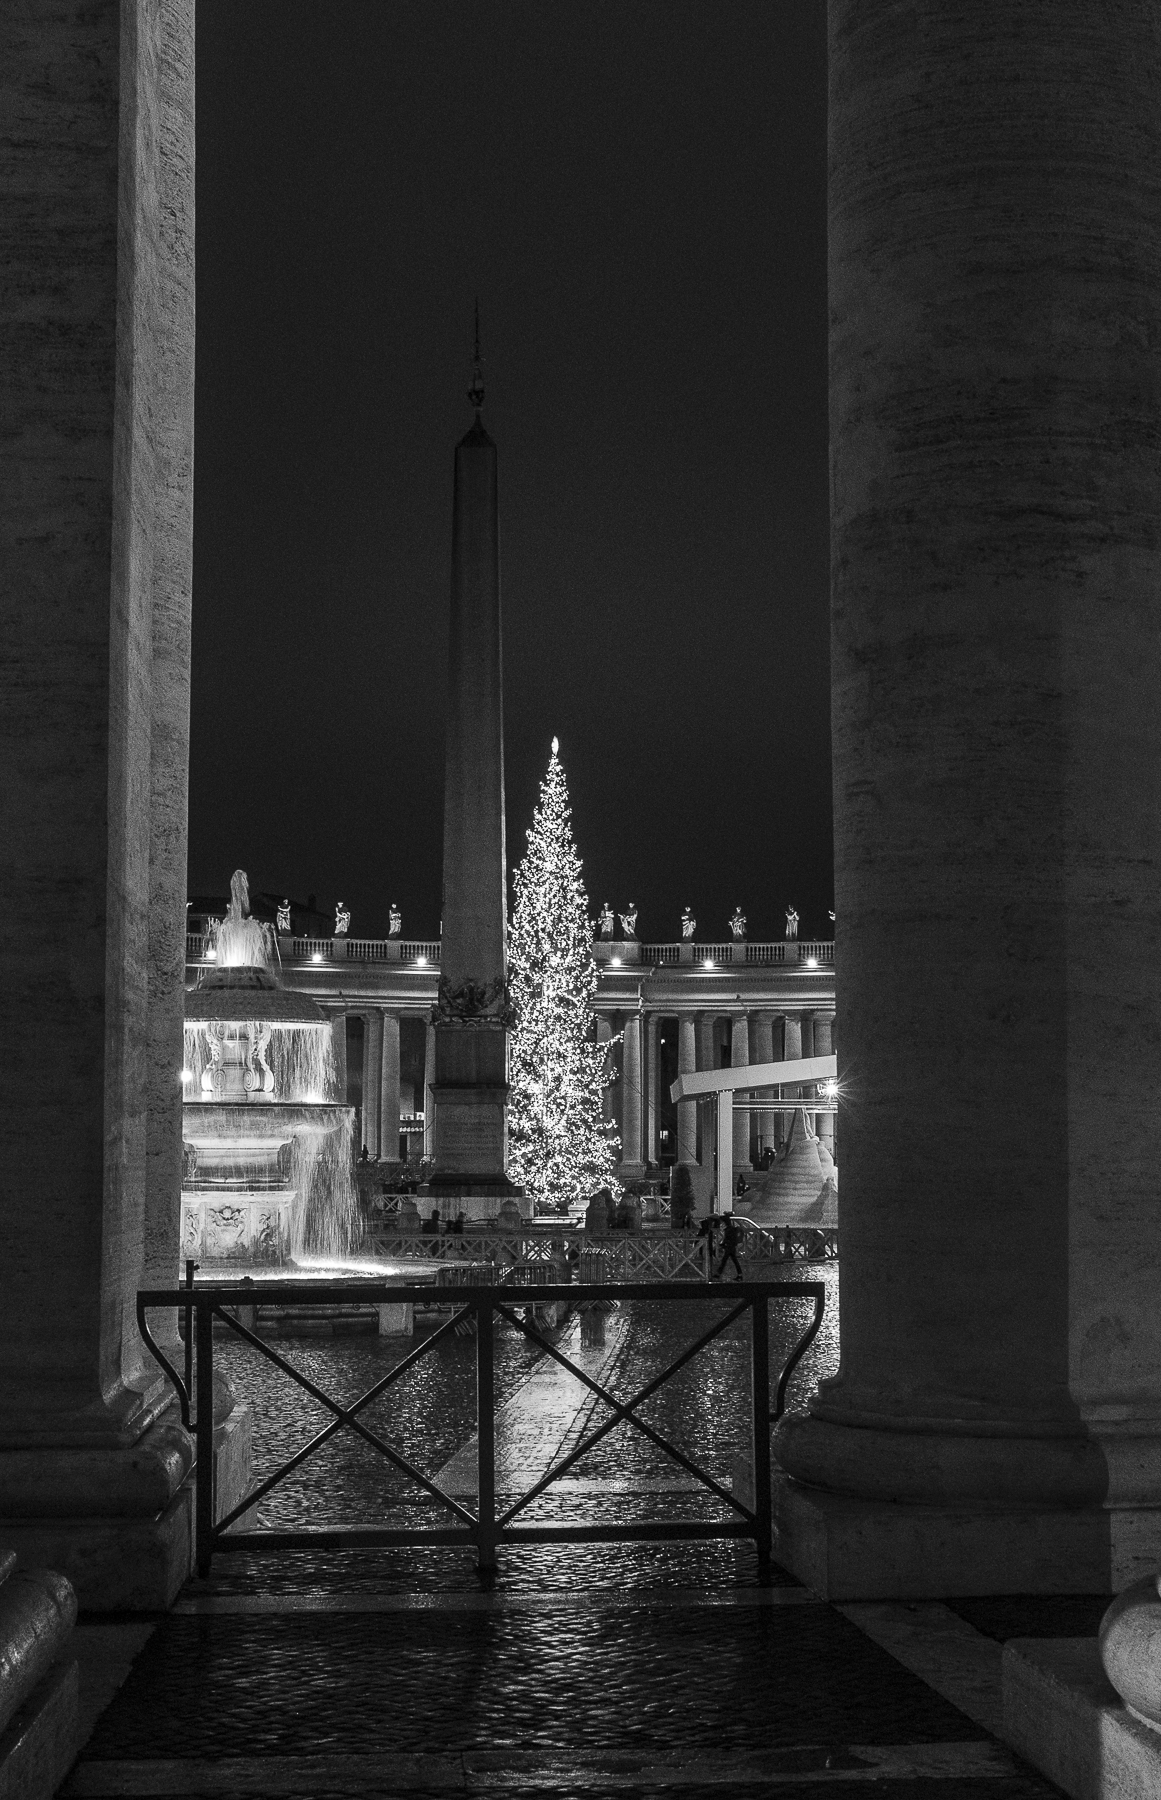 Glimpse of Bernini's columns...